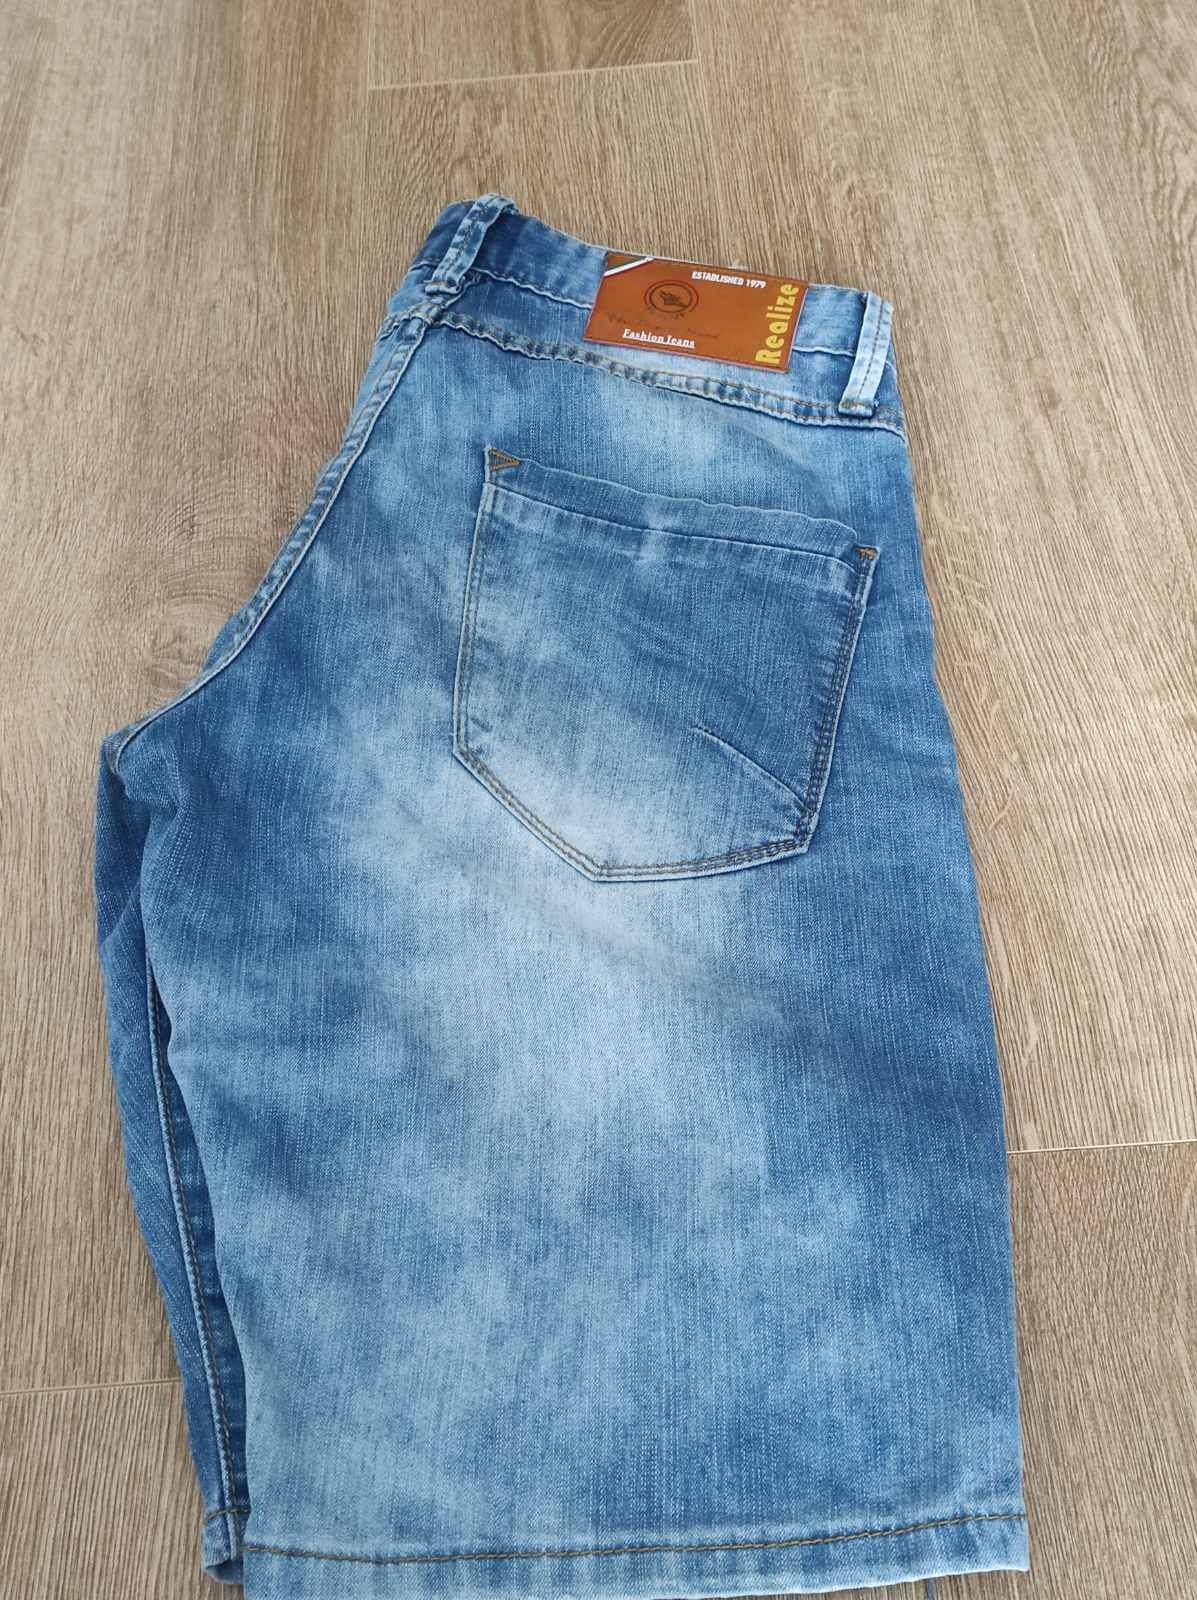 джинсові шорти розмір xs - s, розмір 29